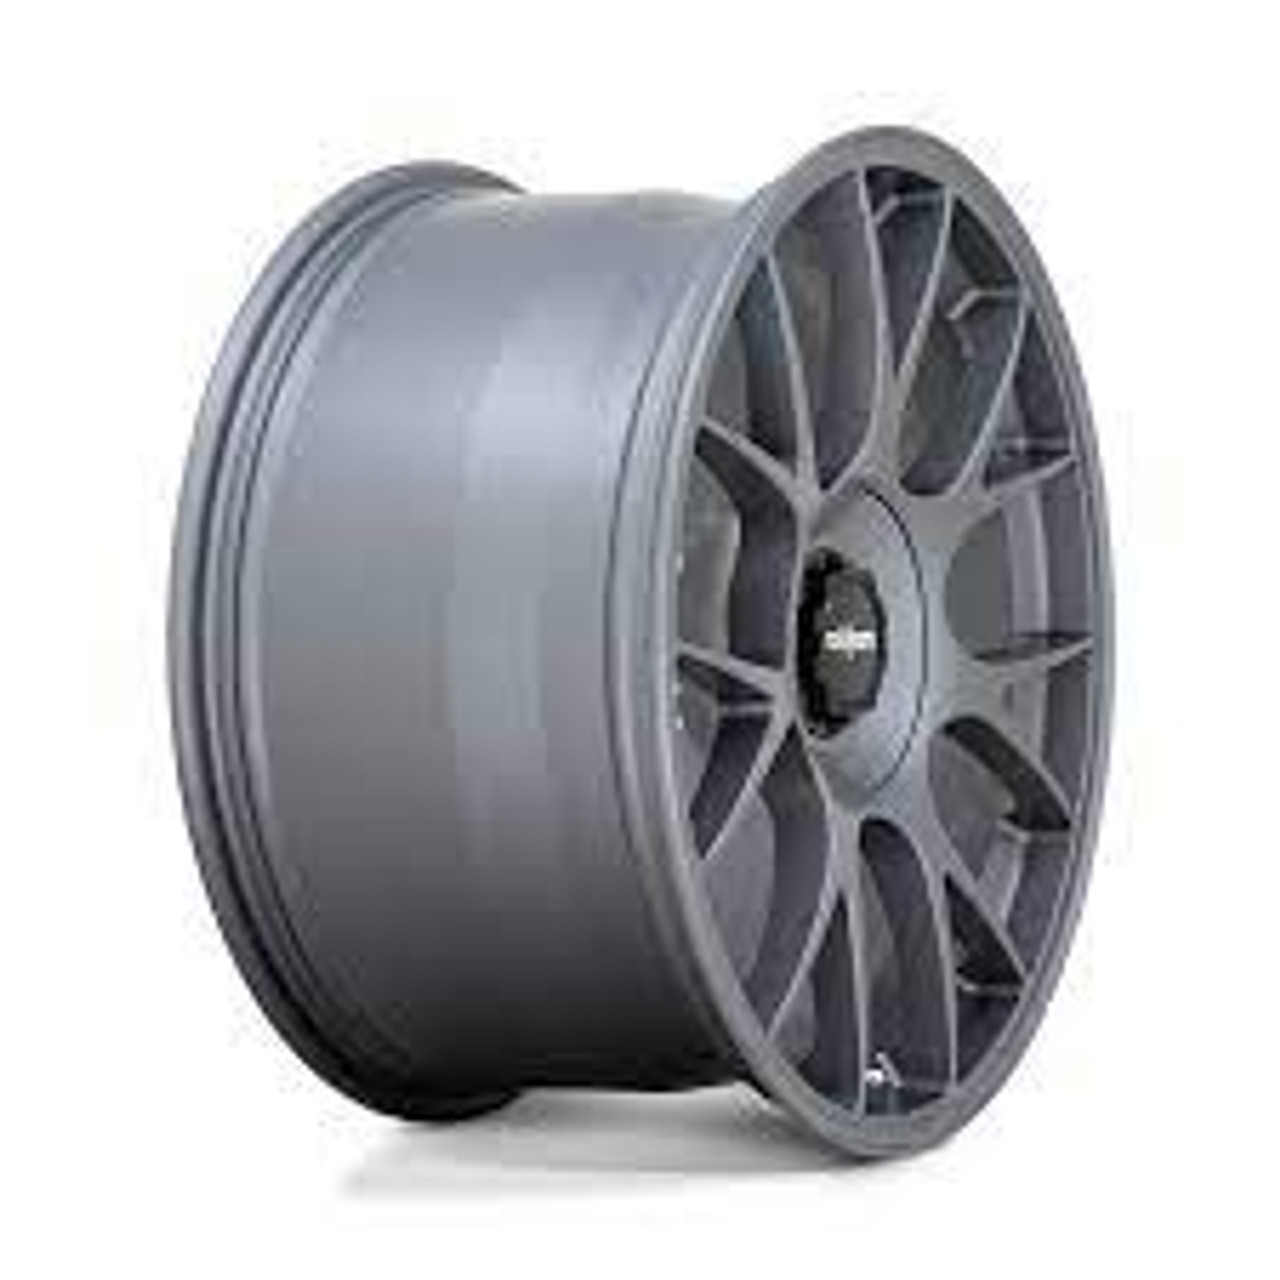 Rotiform R903 TUF Wheel 20x10.5 5x114.3 45 Offset - Satin Titanium